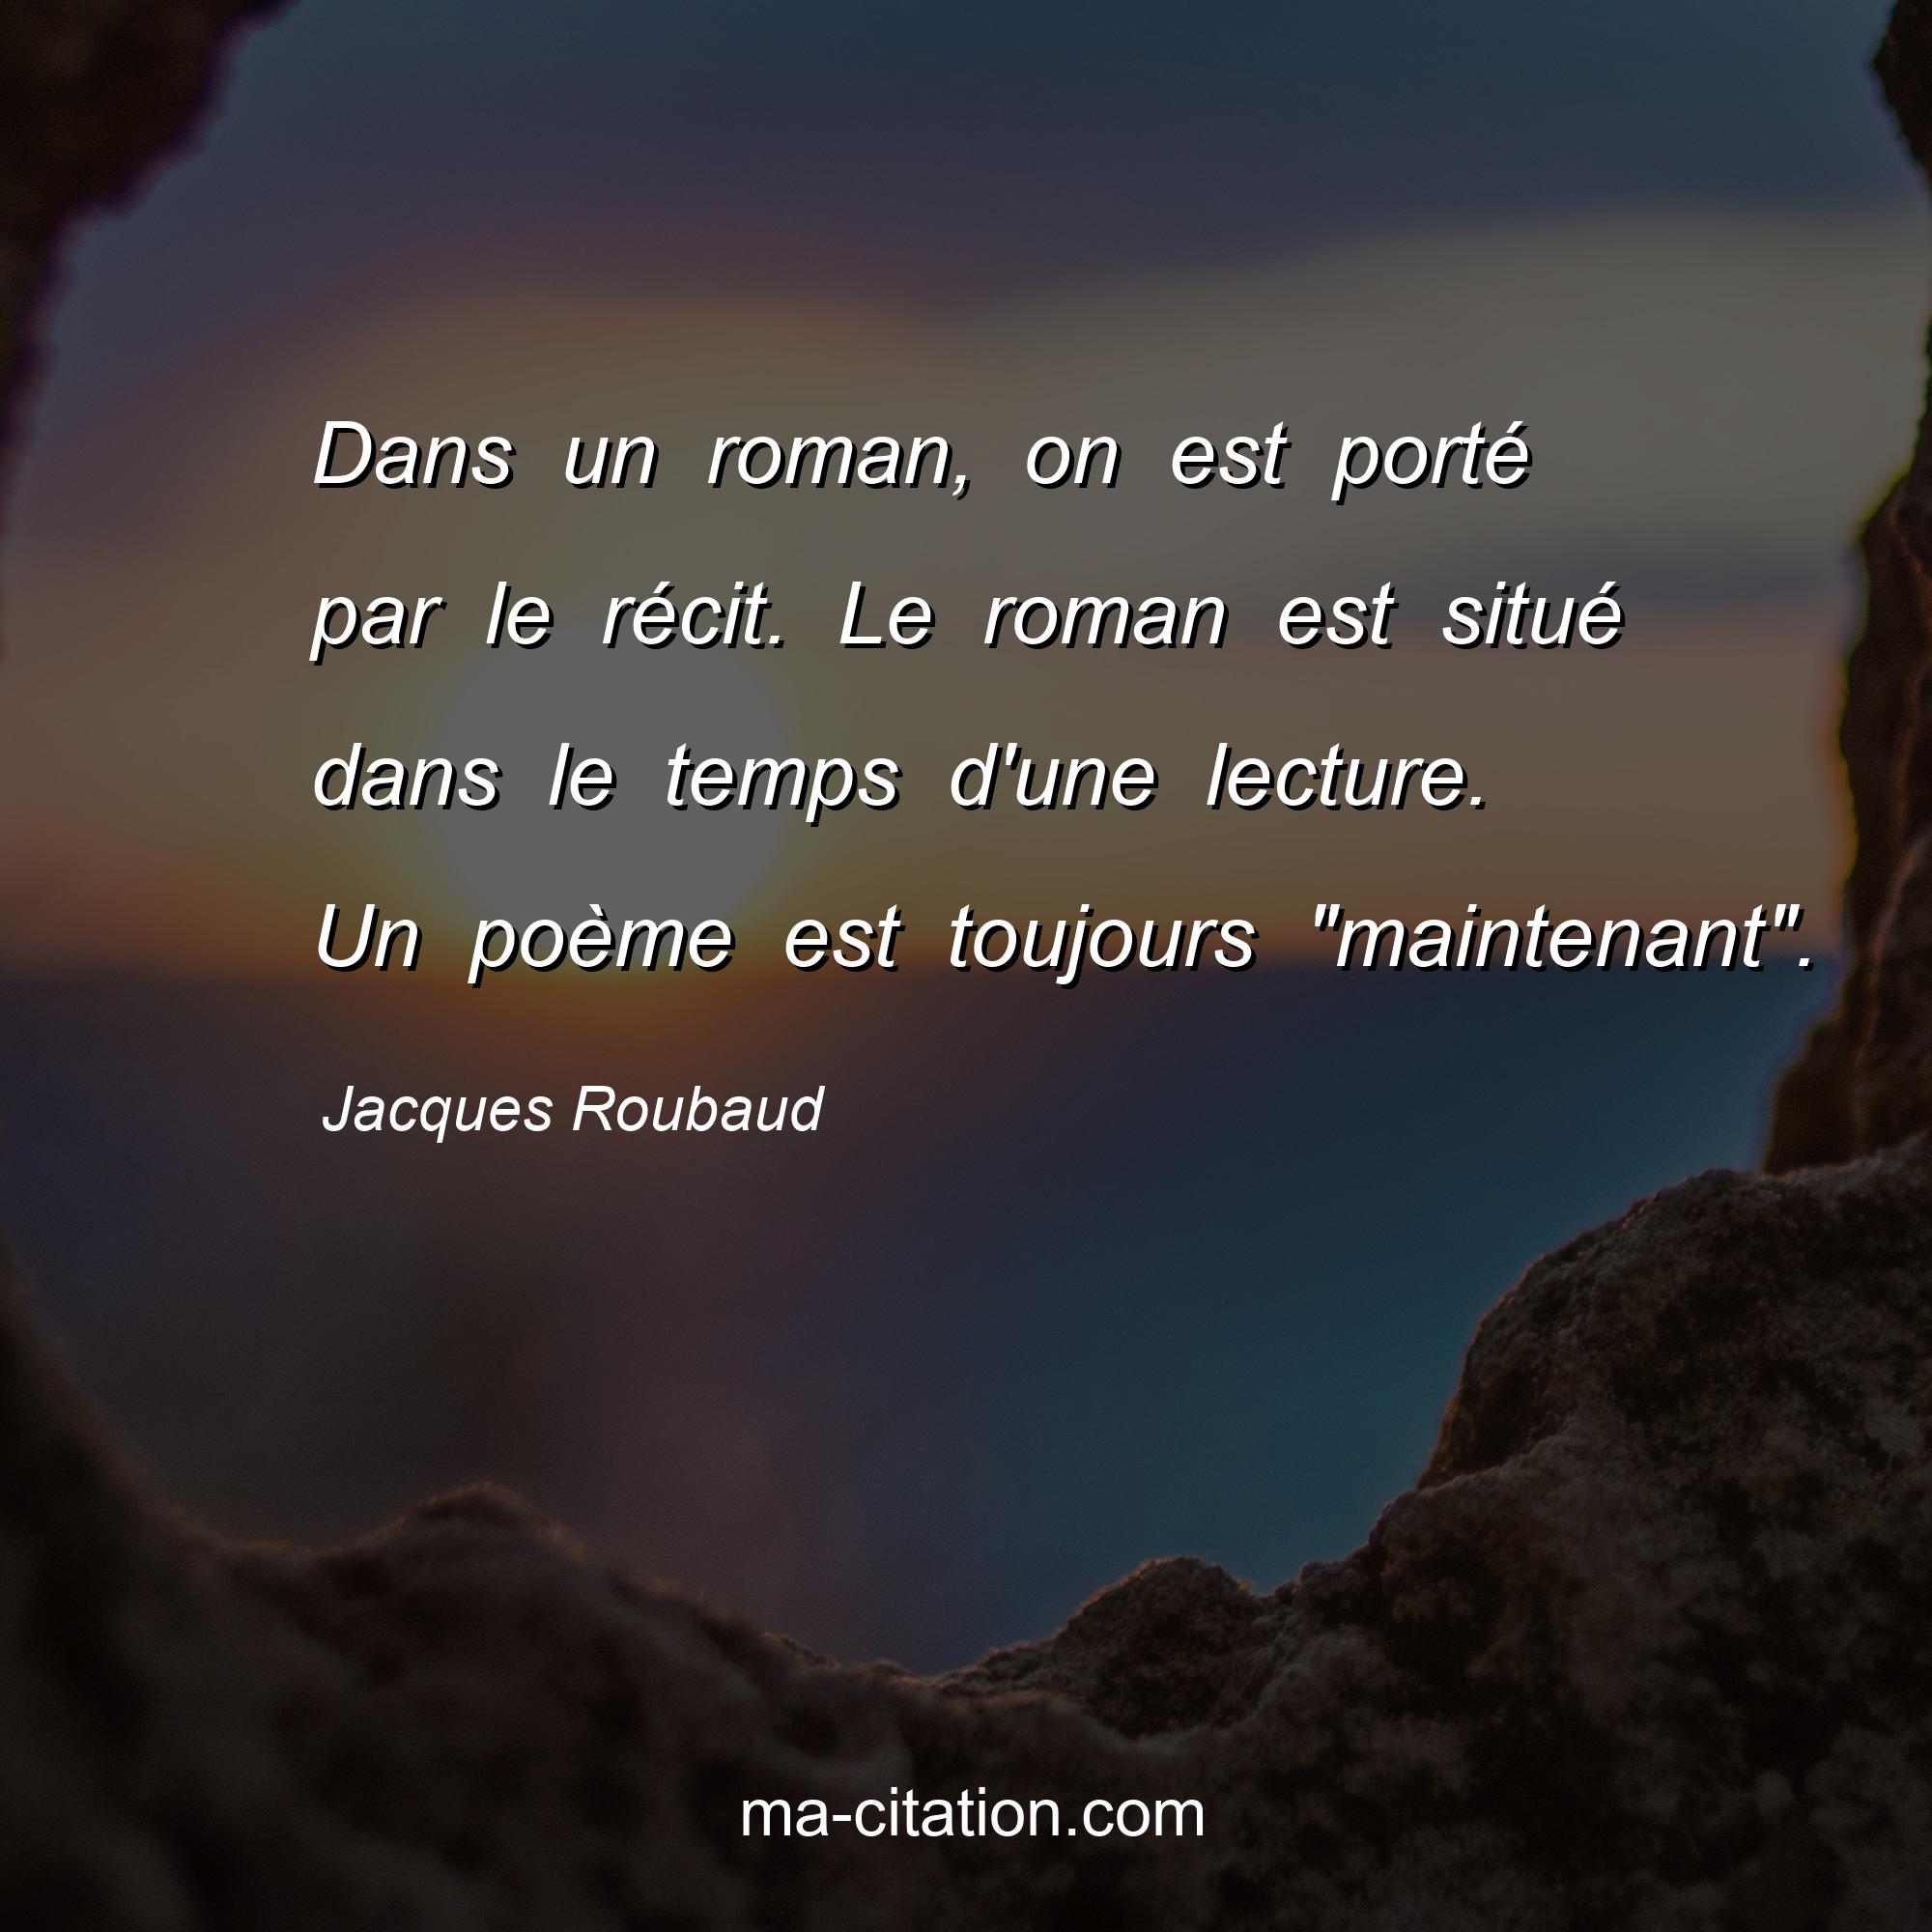 Jacques Roubaud : Dans un roman, on est porté par le récit. Le roman est situé dans le temps d'une lecture. Un poème est toujours 